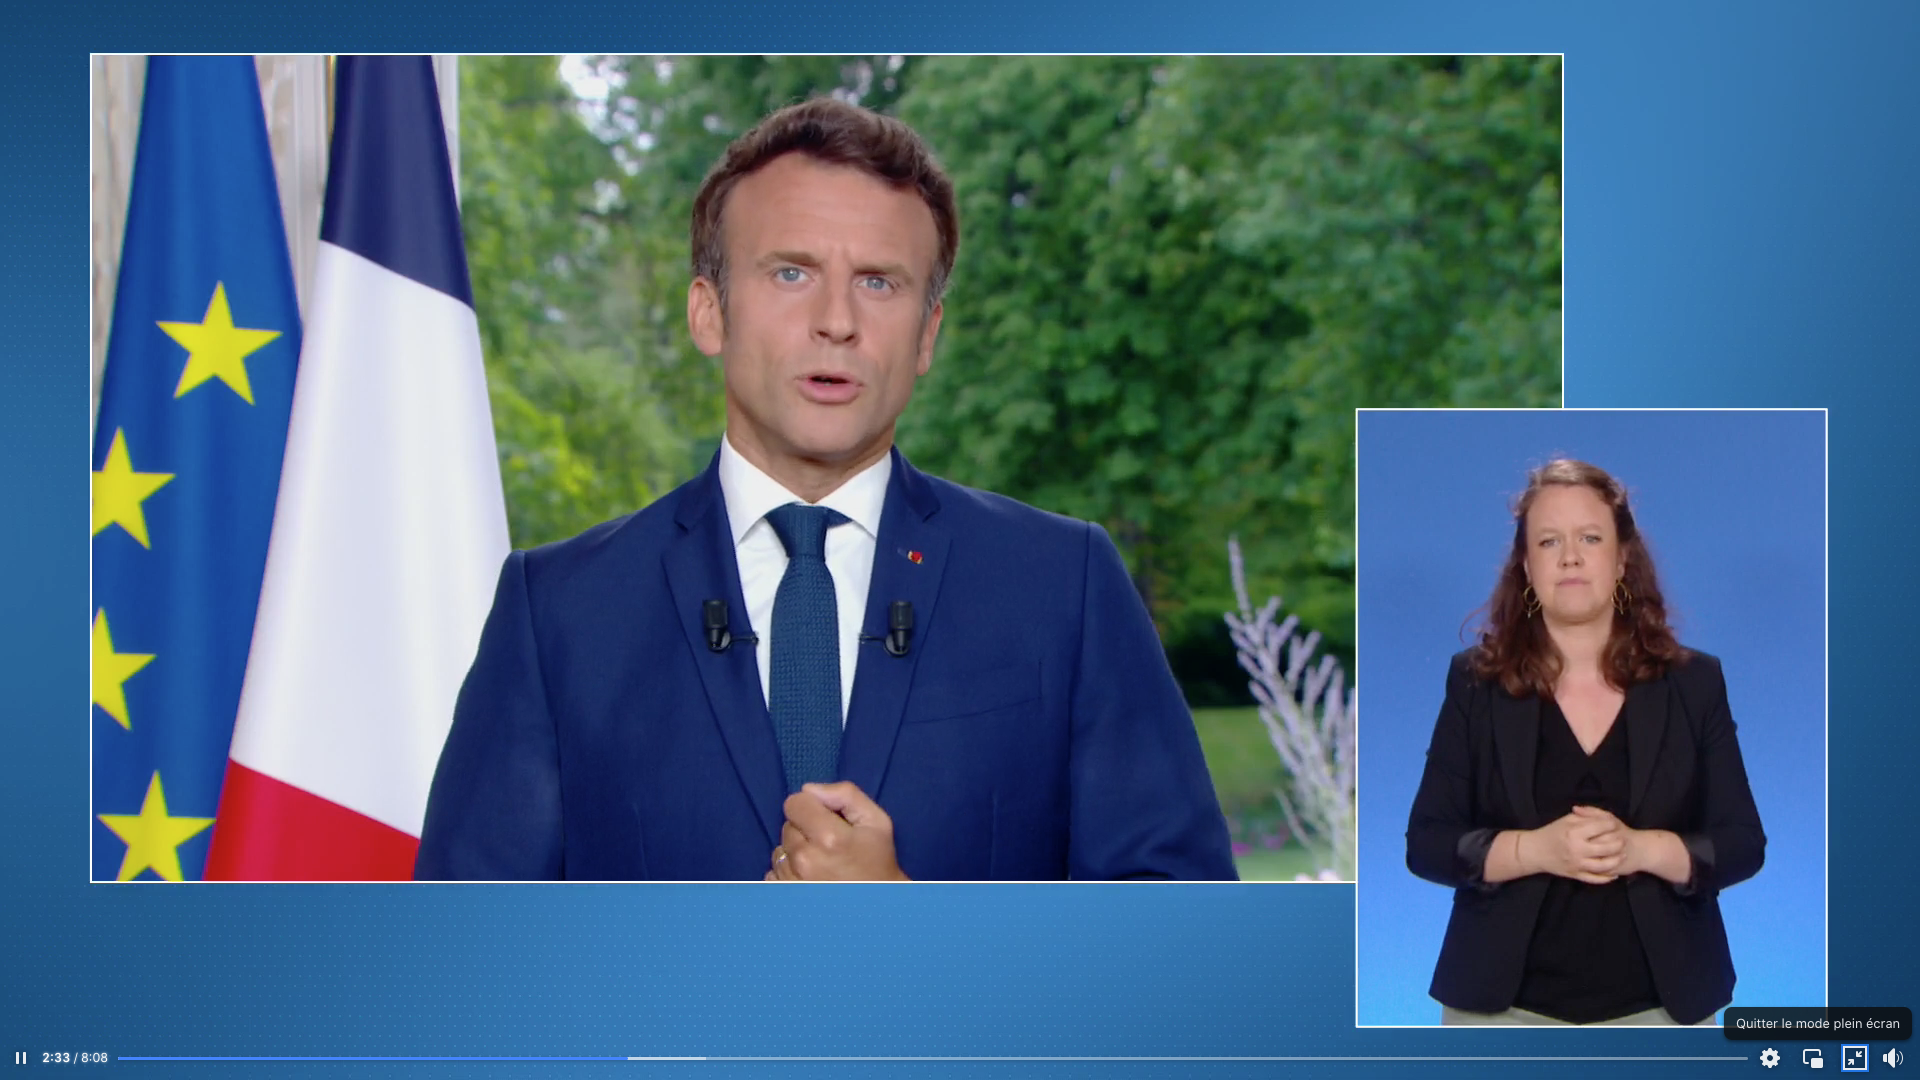     Macron appelle à "légiférer différemment" et à des "compromis" après les législatives

